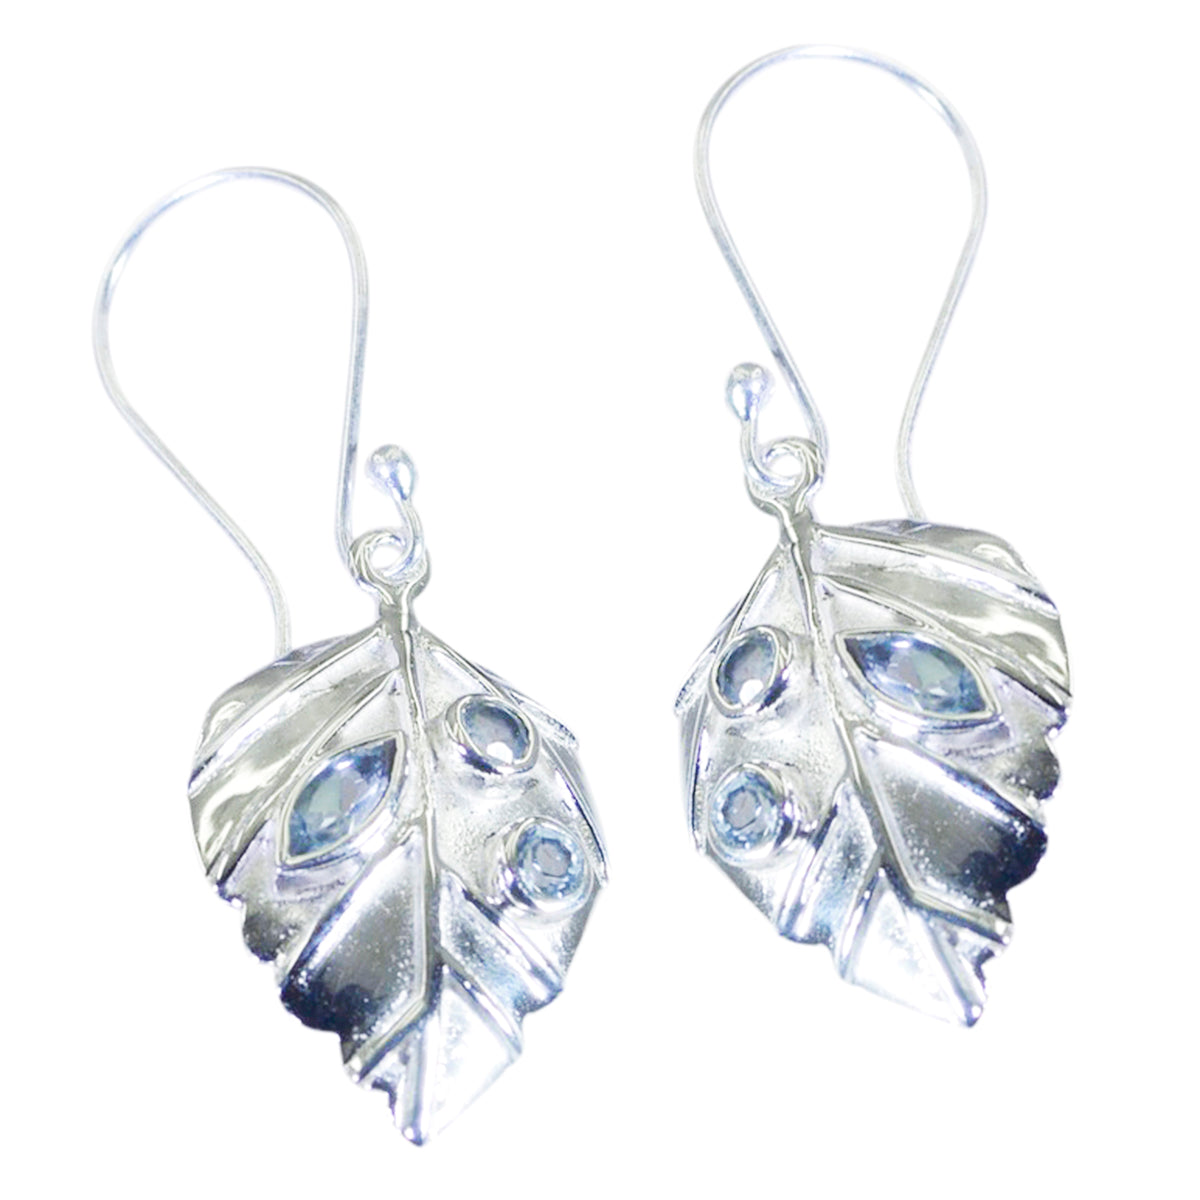 Riyo Good Gemstones multi shape Faceted Blue Topaz Silver Earring gift for halloween